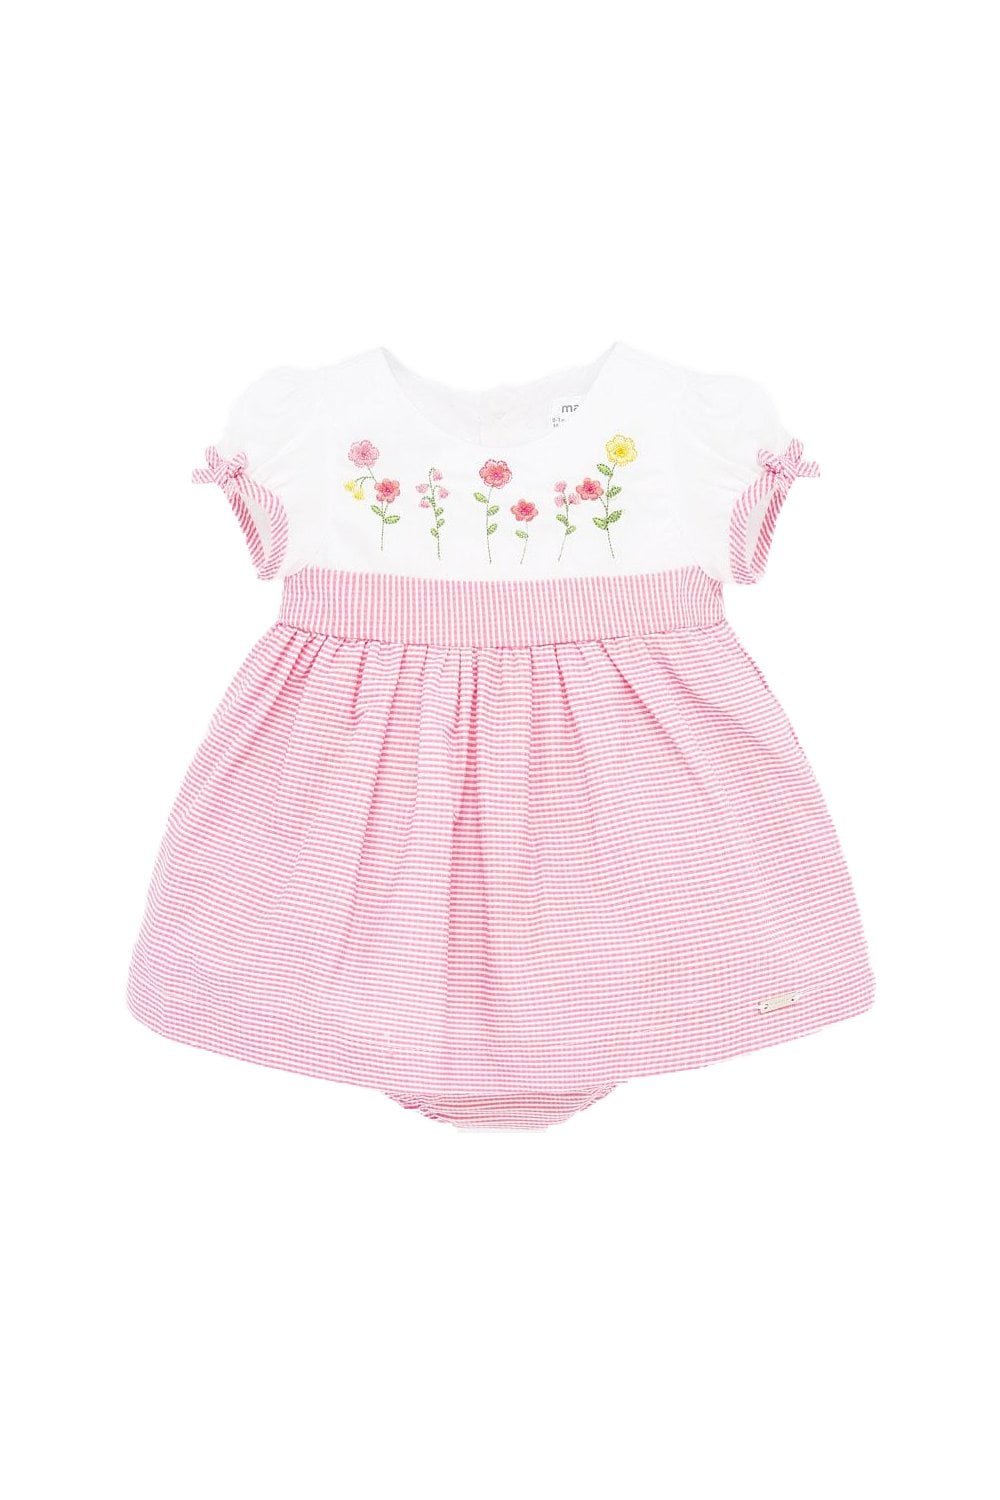 Παιδικό Φόρεμα Για Κορίτσι MAYORAL 20-01861-020 Ροζ